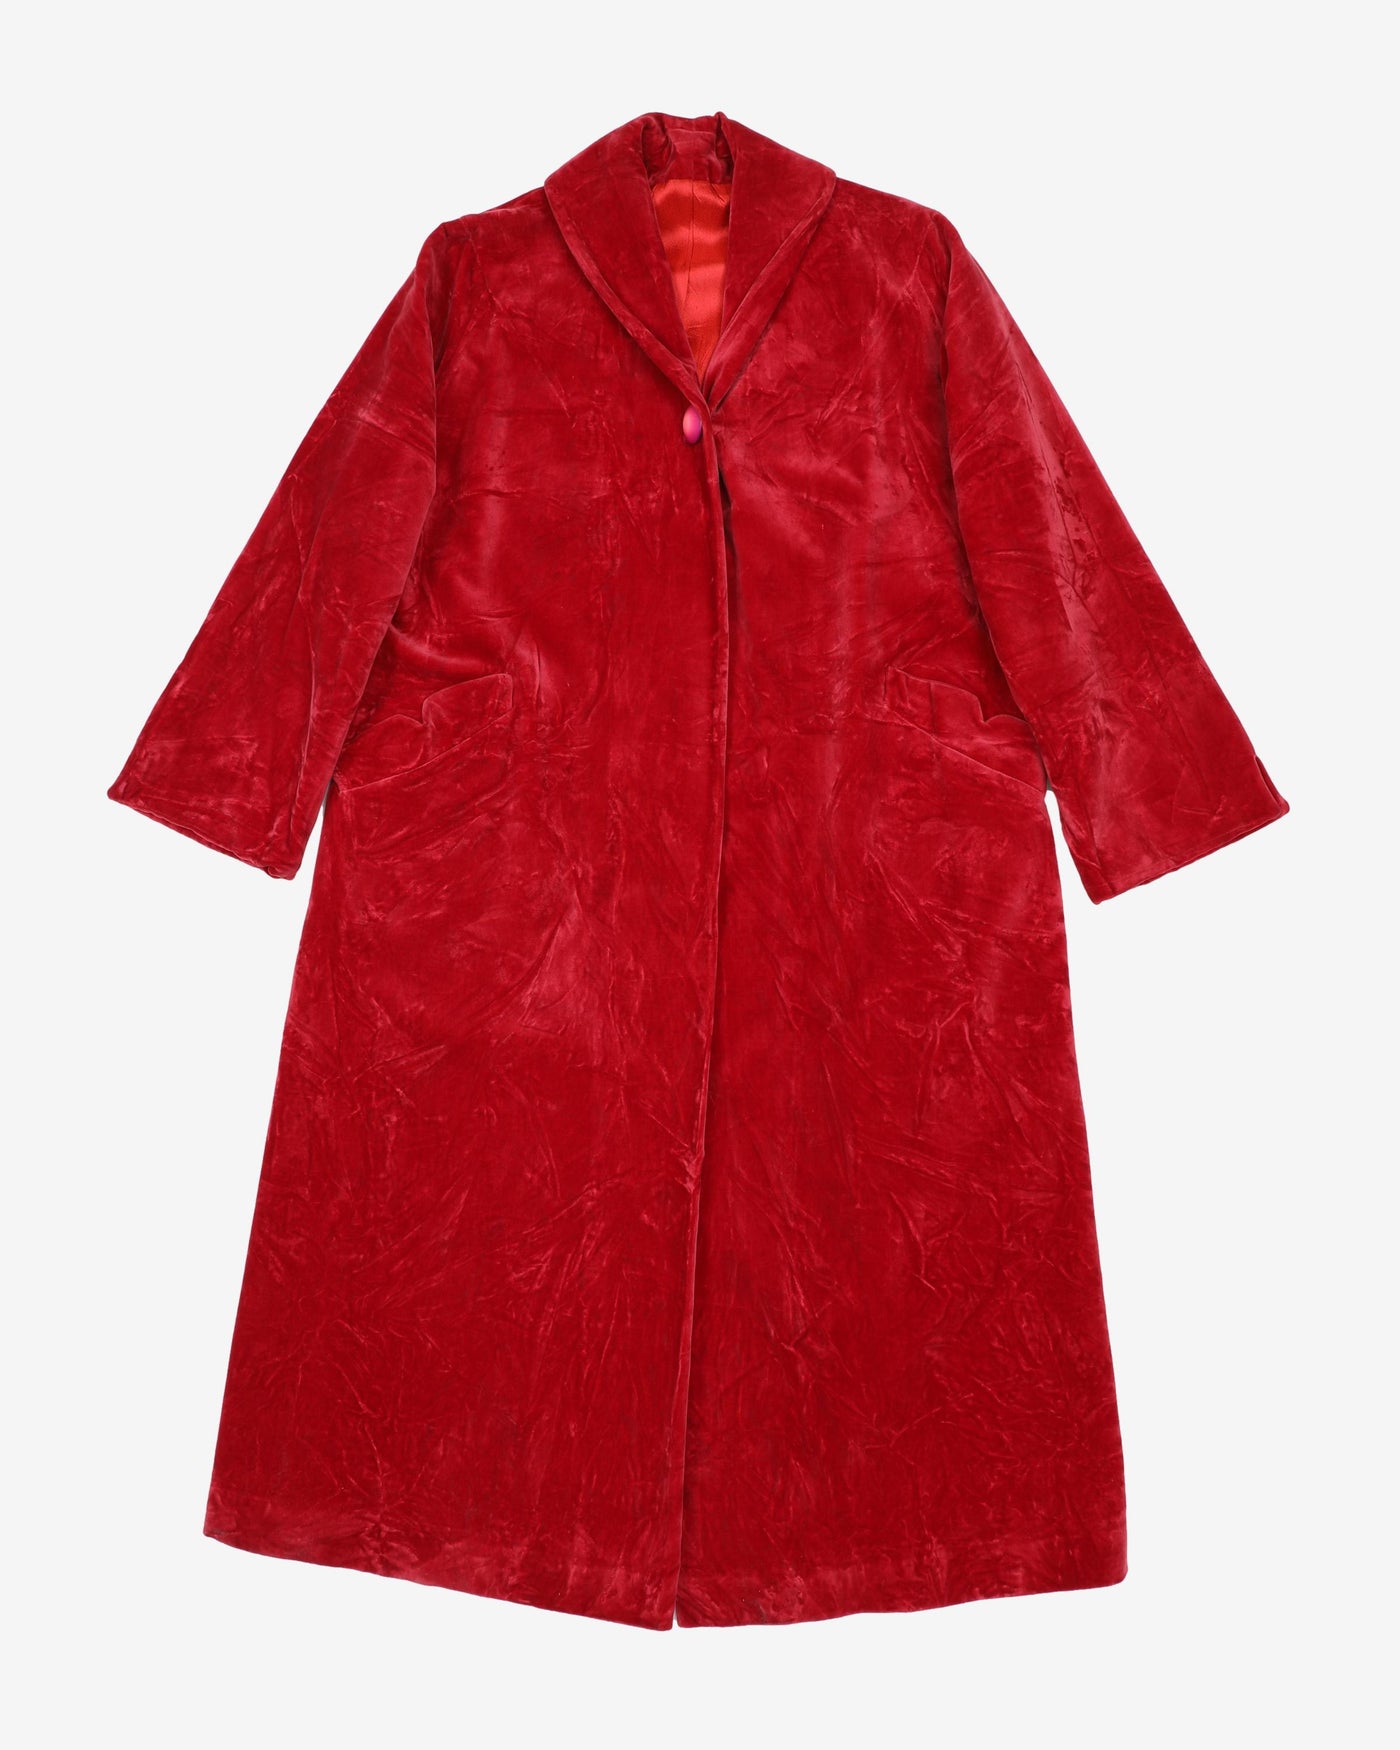 1960s Raspberry Red Velvet Coat - S / M